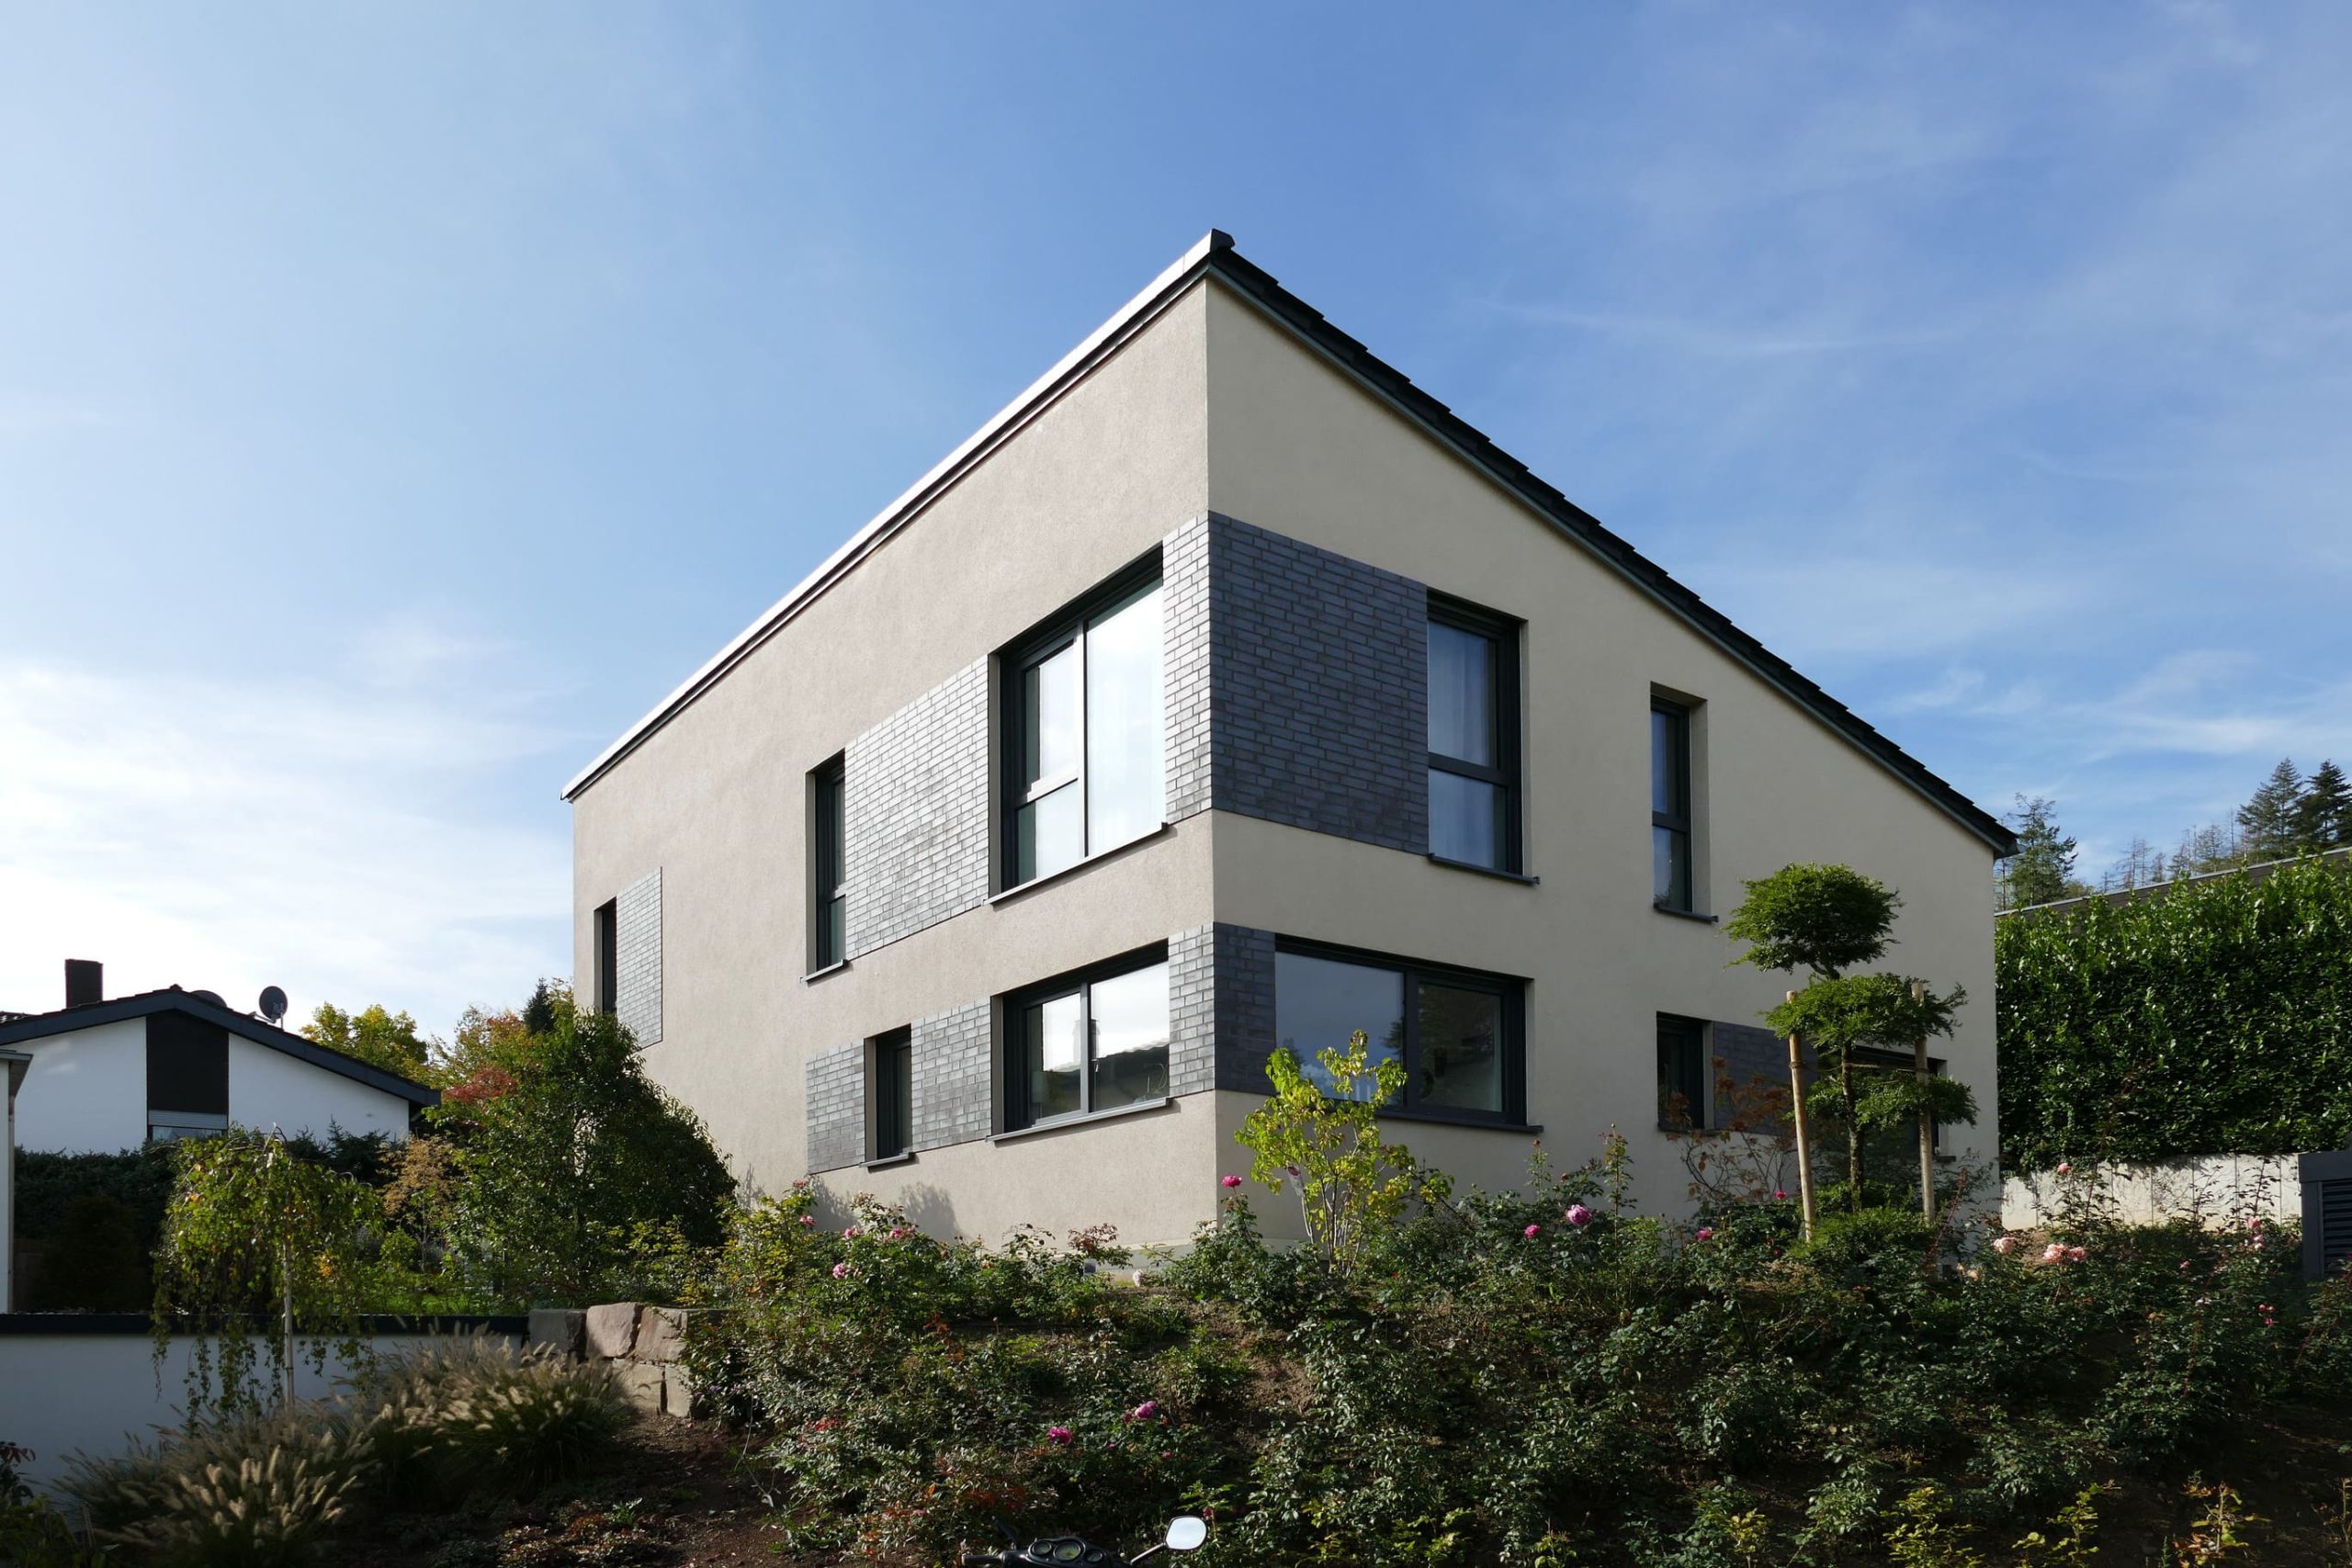 Referenz 34 - Pultdachhaus in Königswinter